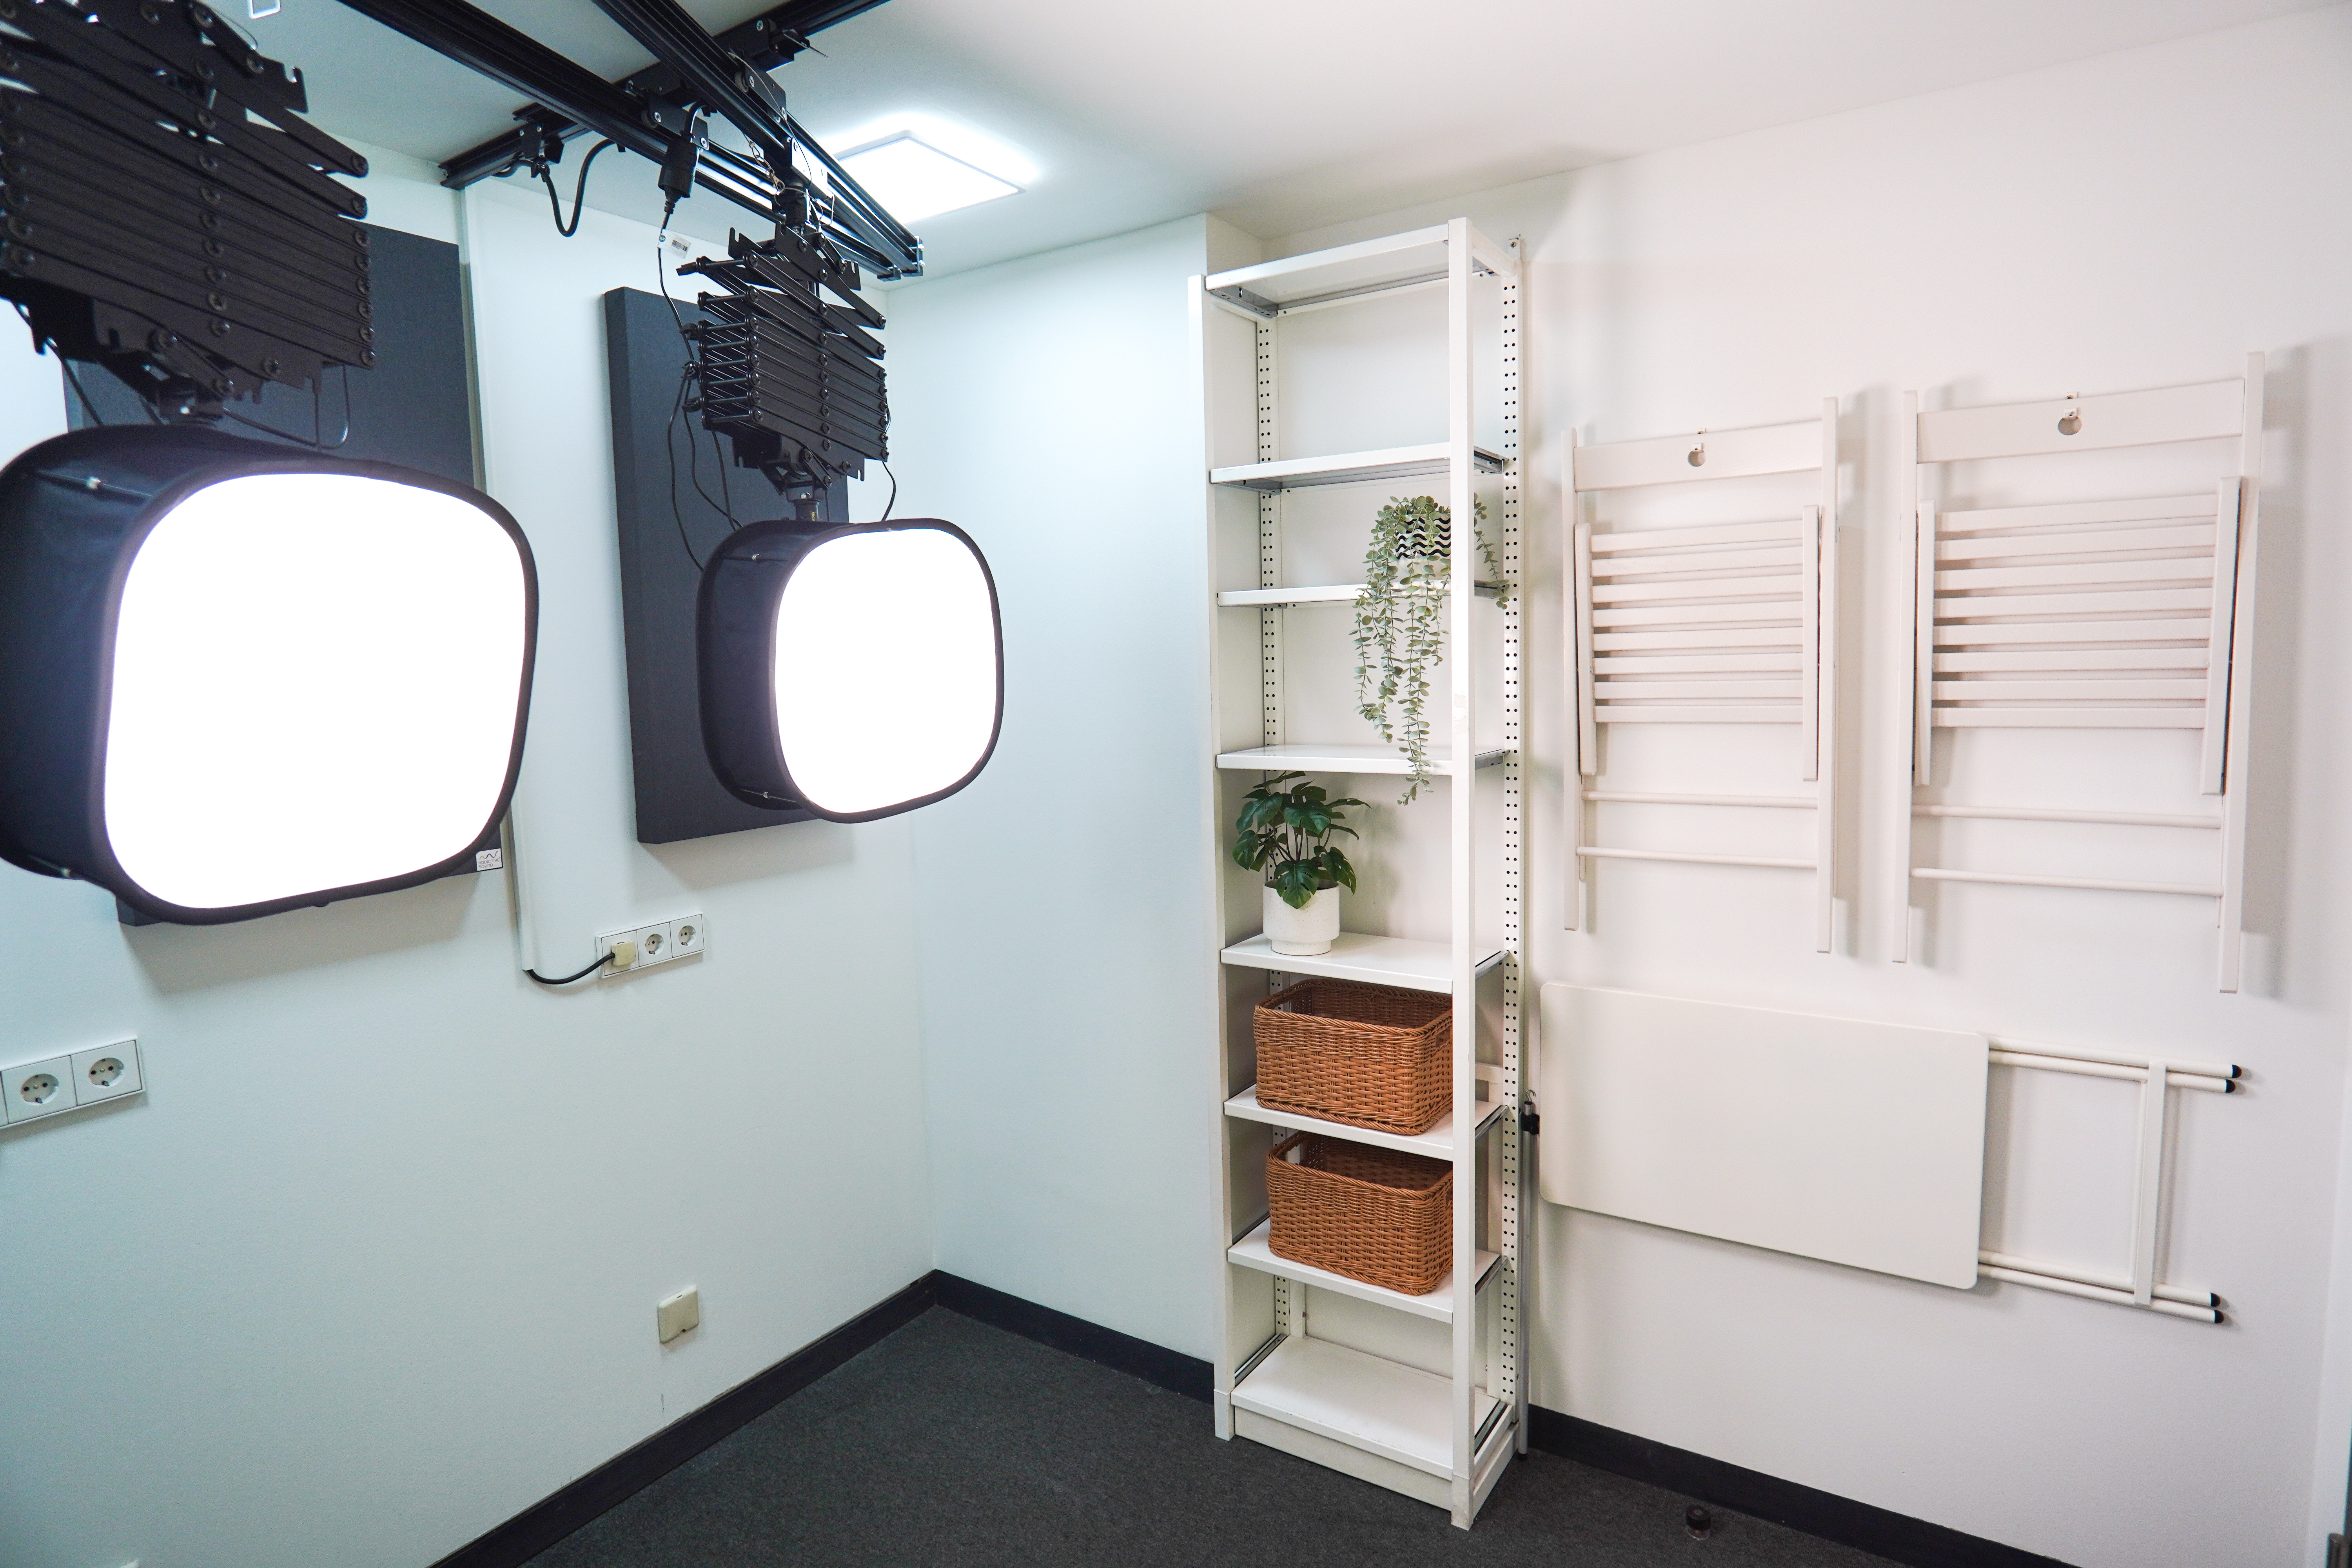 Zu sehen ist die Ausstattung des Media Studios der Lernwerkstatt, wie professionelle Beleuchtung, Stühle und Requisiten. 